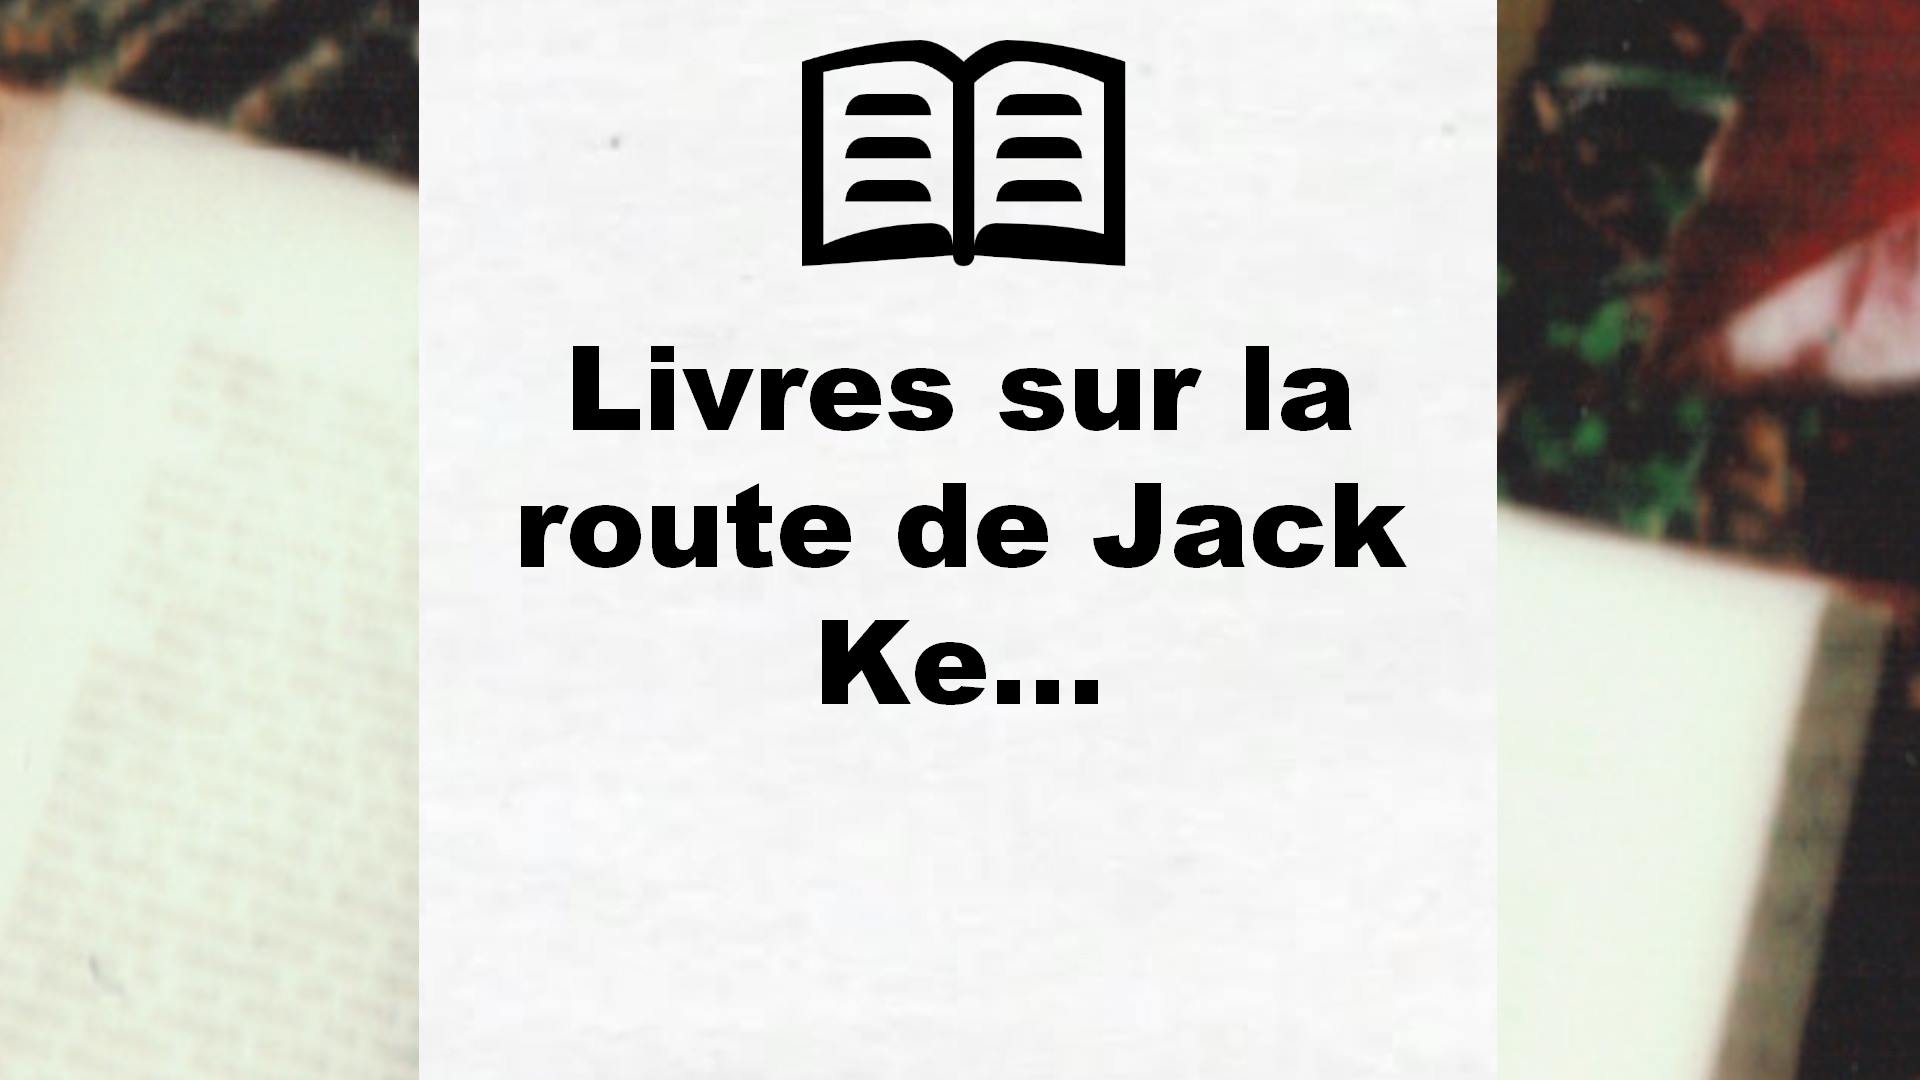 Livres sur la route de Jack Kerouac